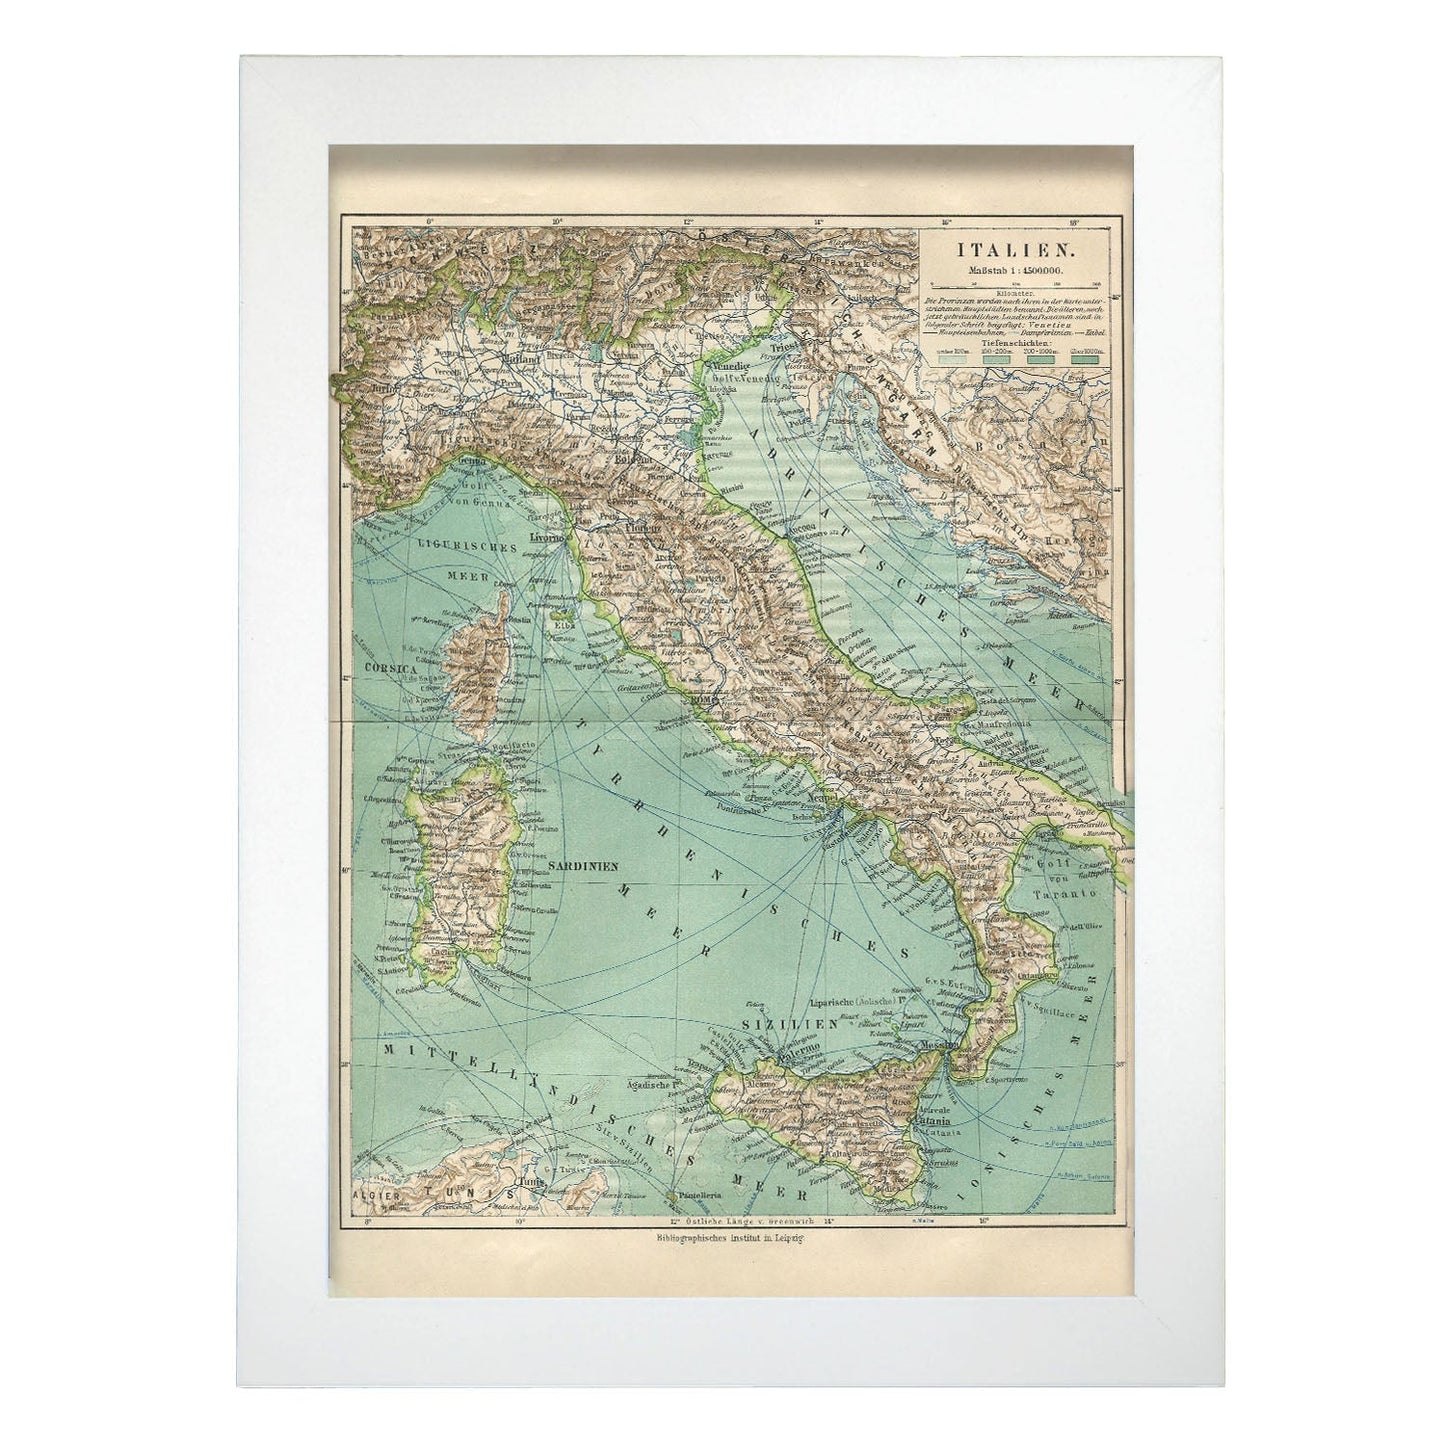 Vintage Map of Italy-Artwork-Nacnic-A4-Marco Blanco-Nacnic Estudio SL